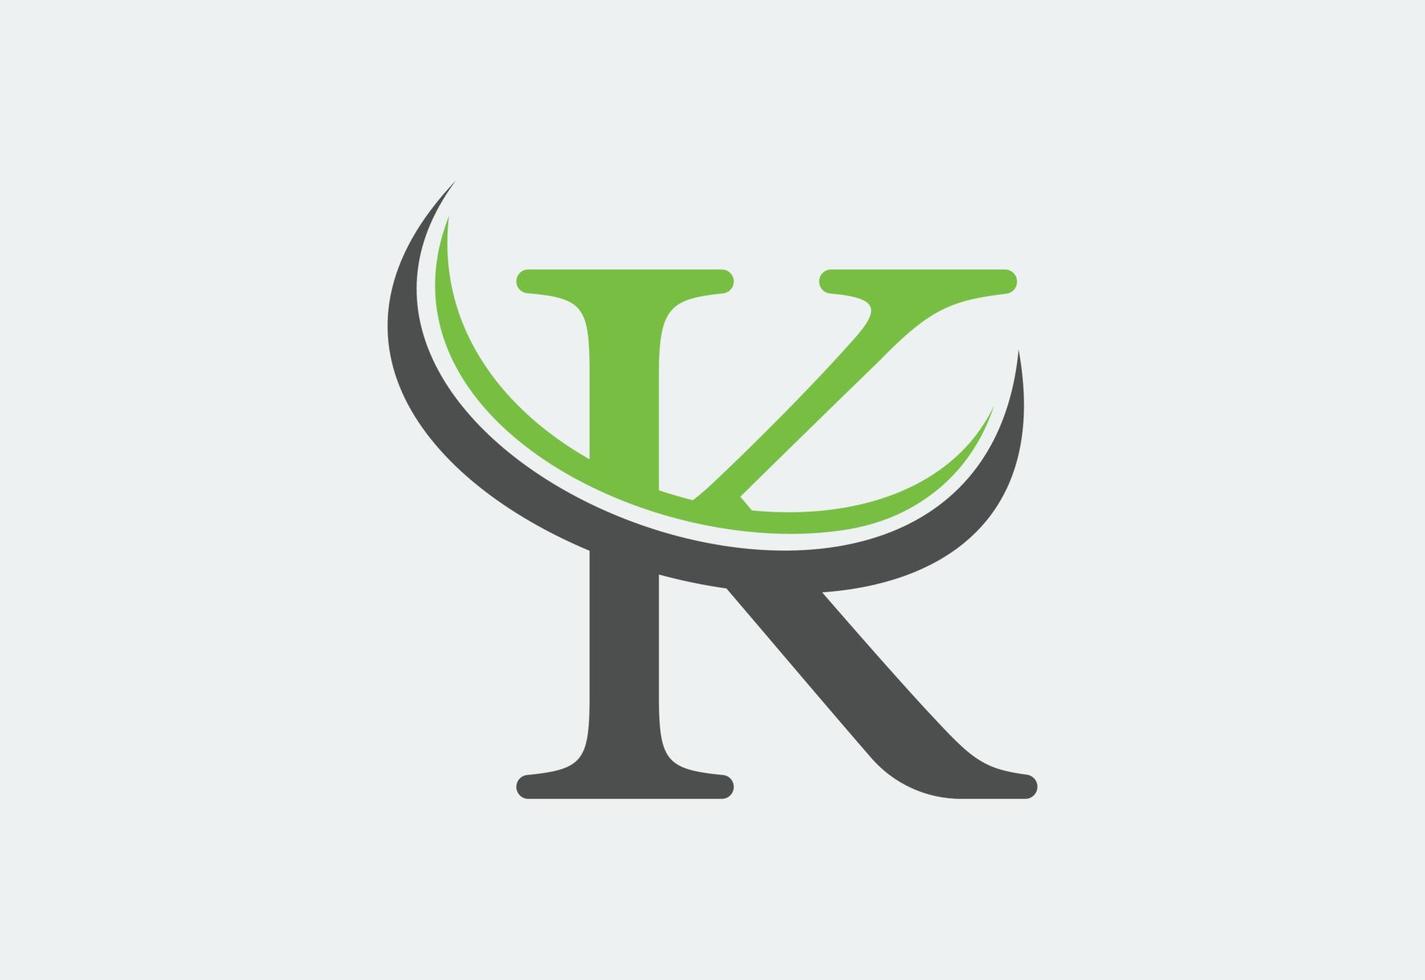 brief k logo ontwerp sjabloon, vector illustratie